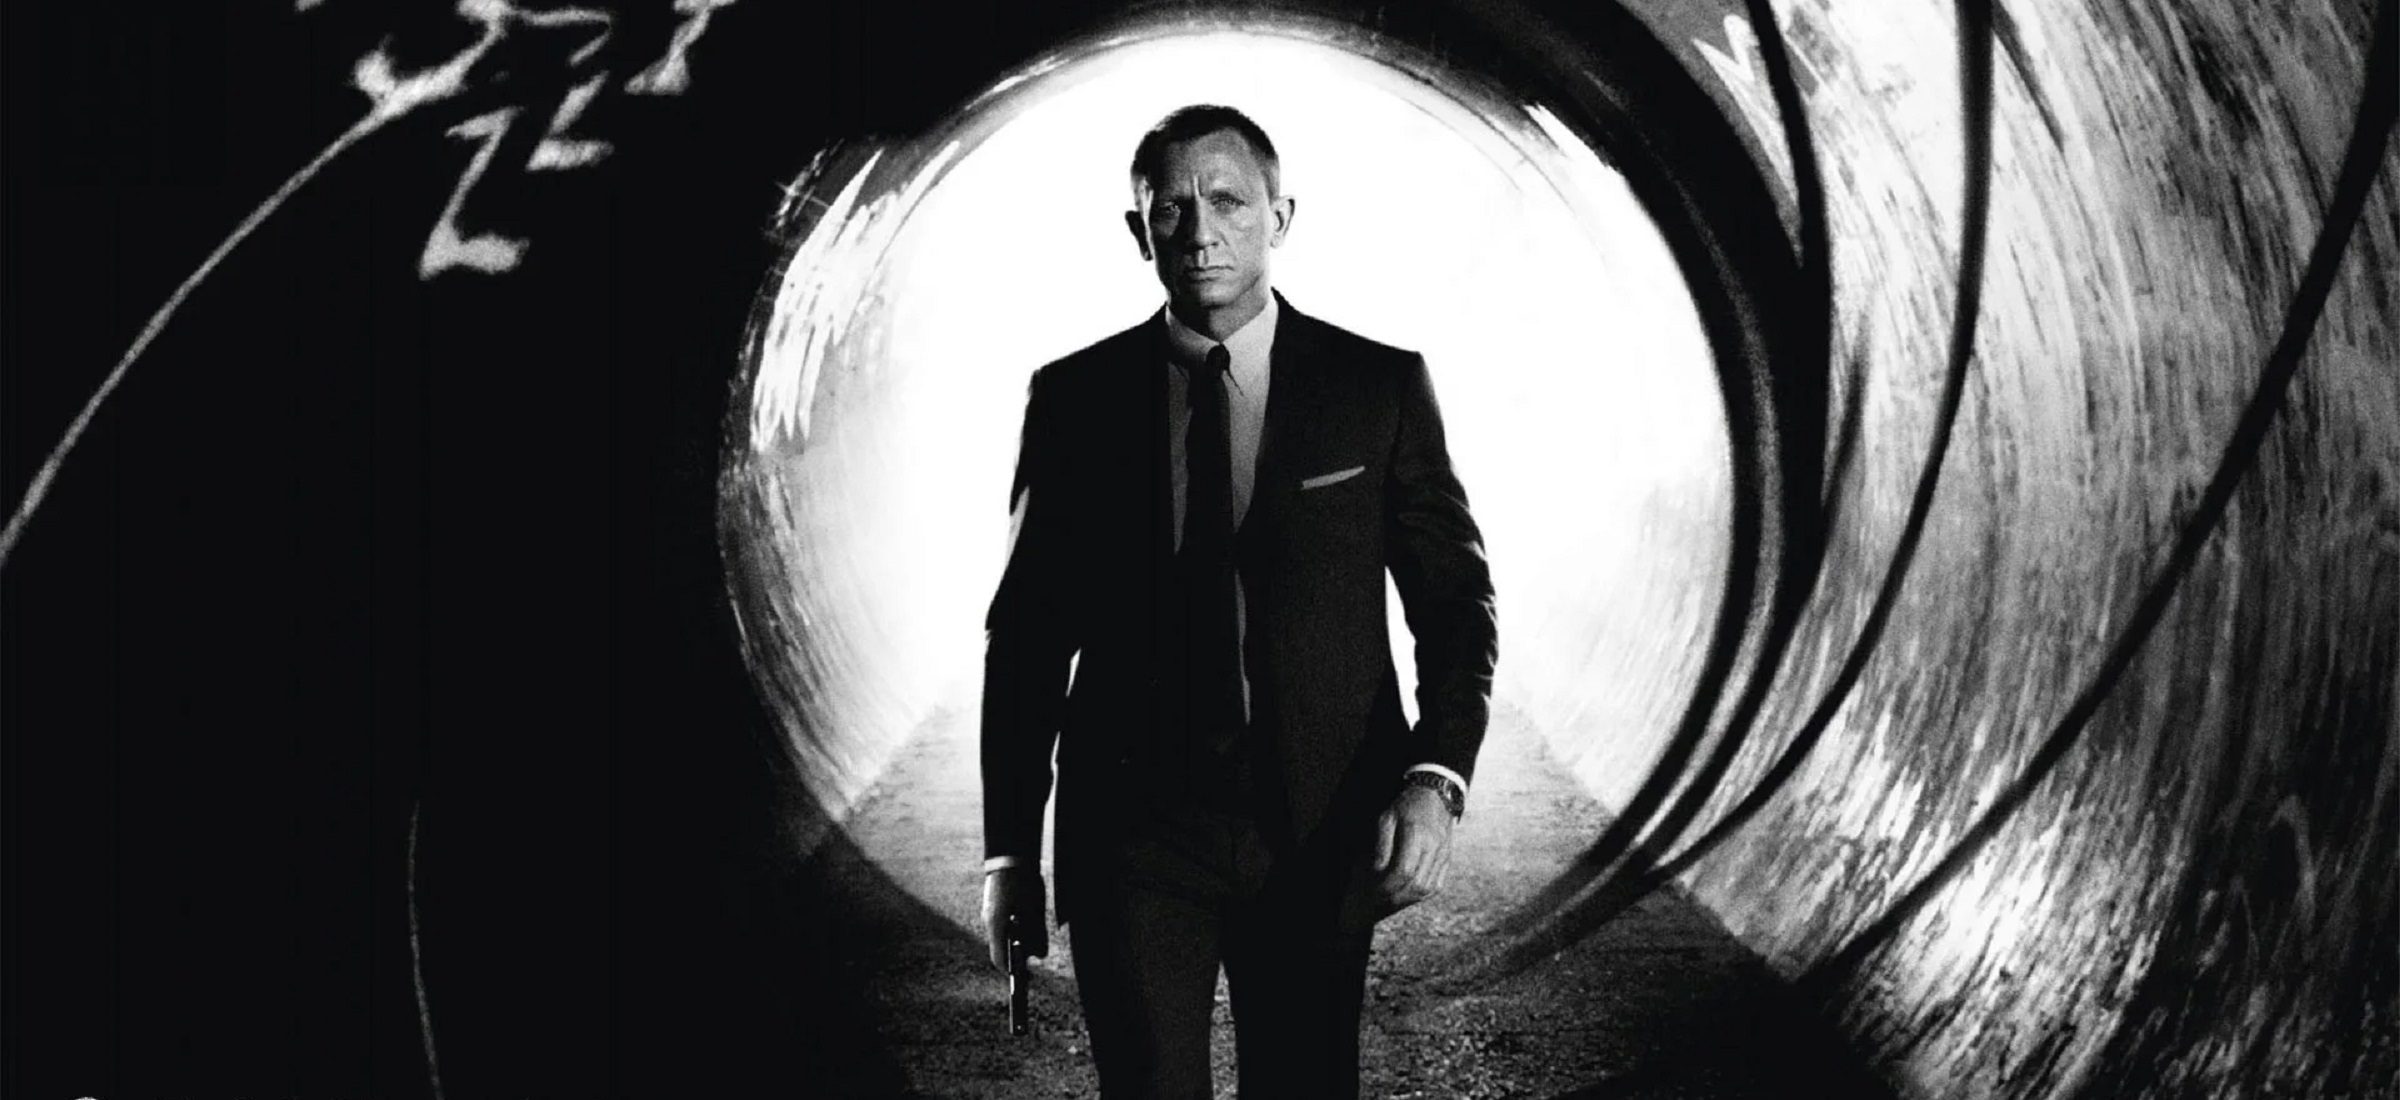 Sie können Agent 007 werden. Erst in einem Jahr einen neuen Schauspieler auswählen und jetzt die Filmpremiere "James Bond sein" 94